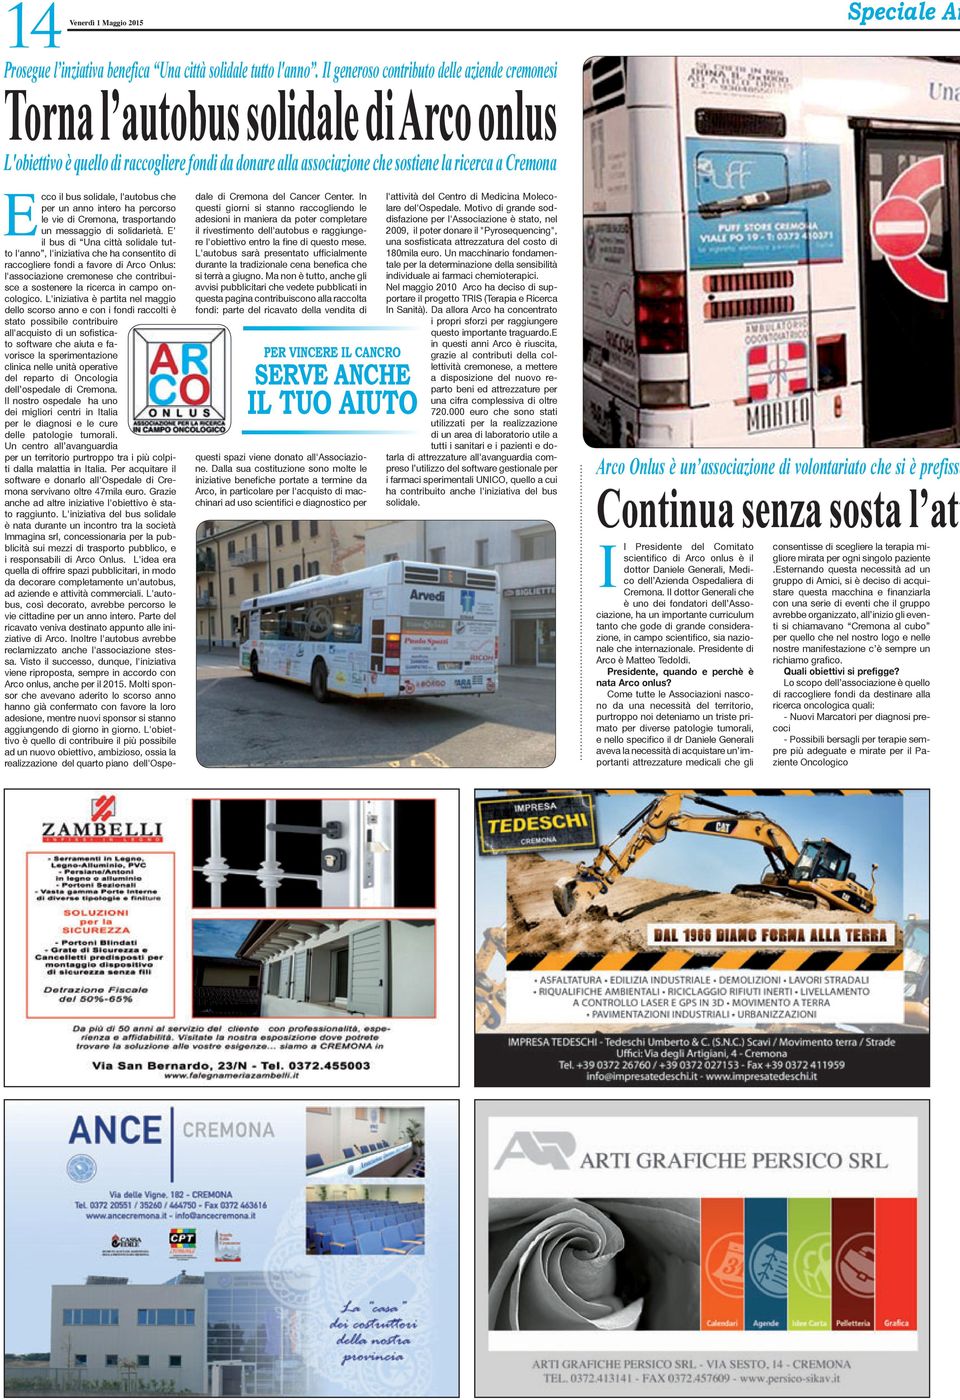 Ar Ecco il bus solidale, l'autobus che per un anno intero ha percorso le vie di Cremona, trasportando un messaggio di solidarietà.